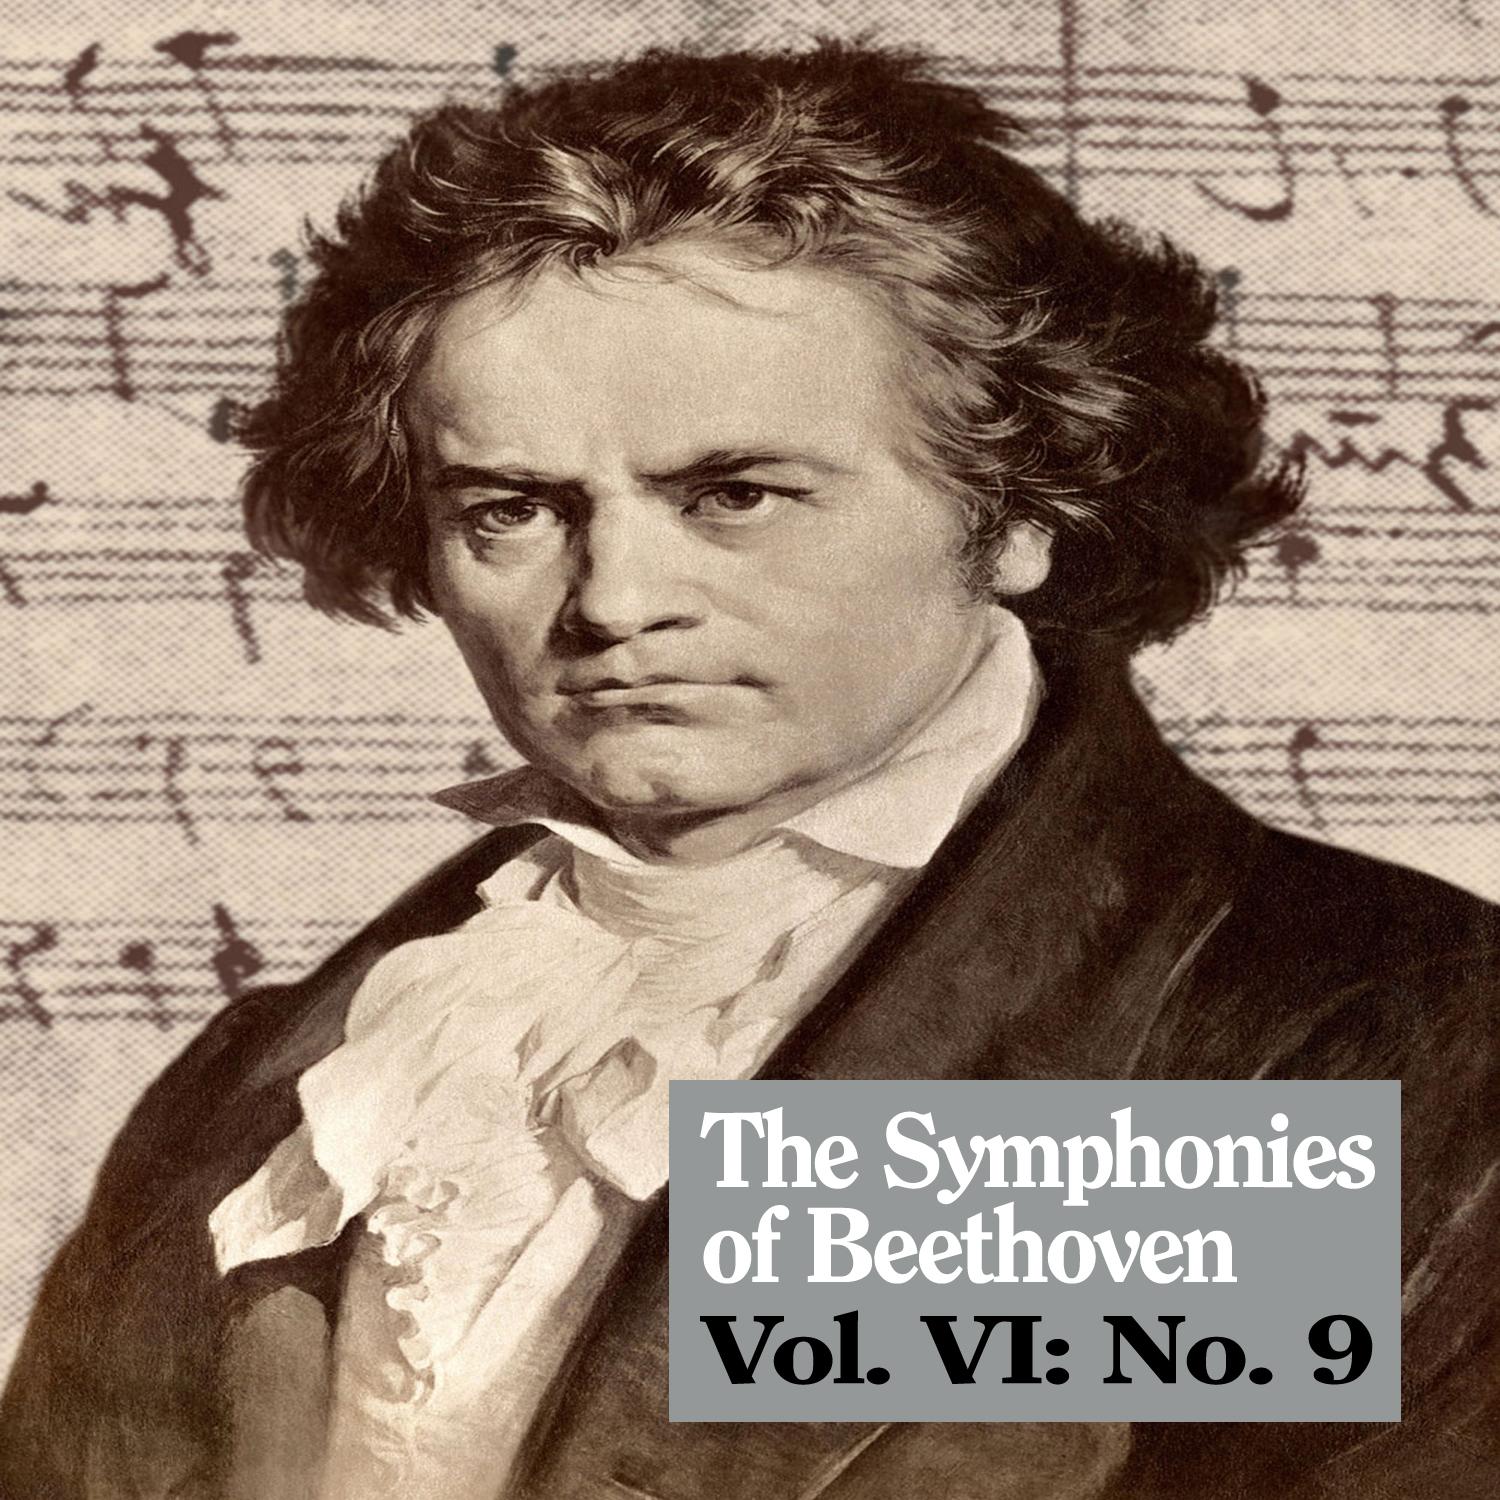 The Symphonies of Beethoven, Vol. VI: No. 9